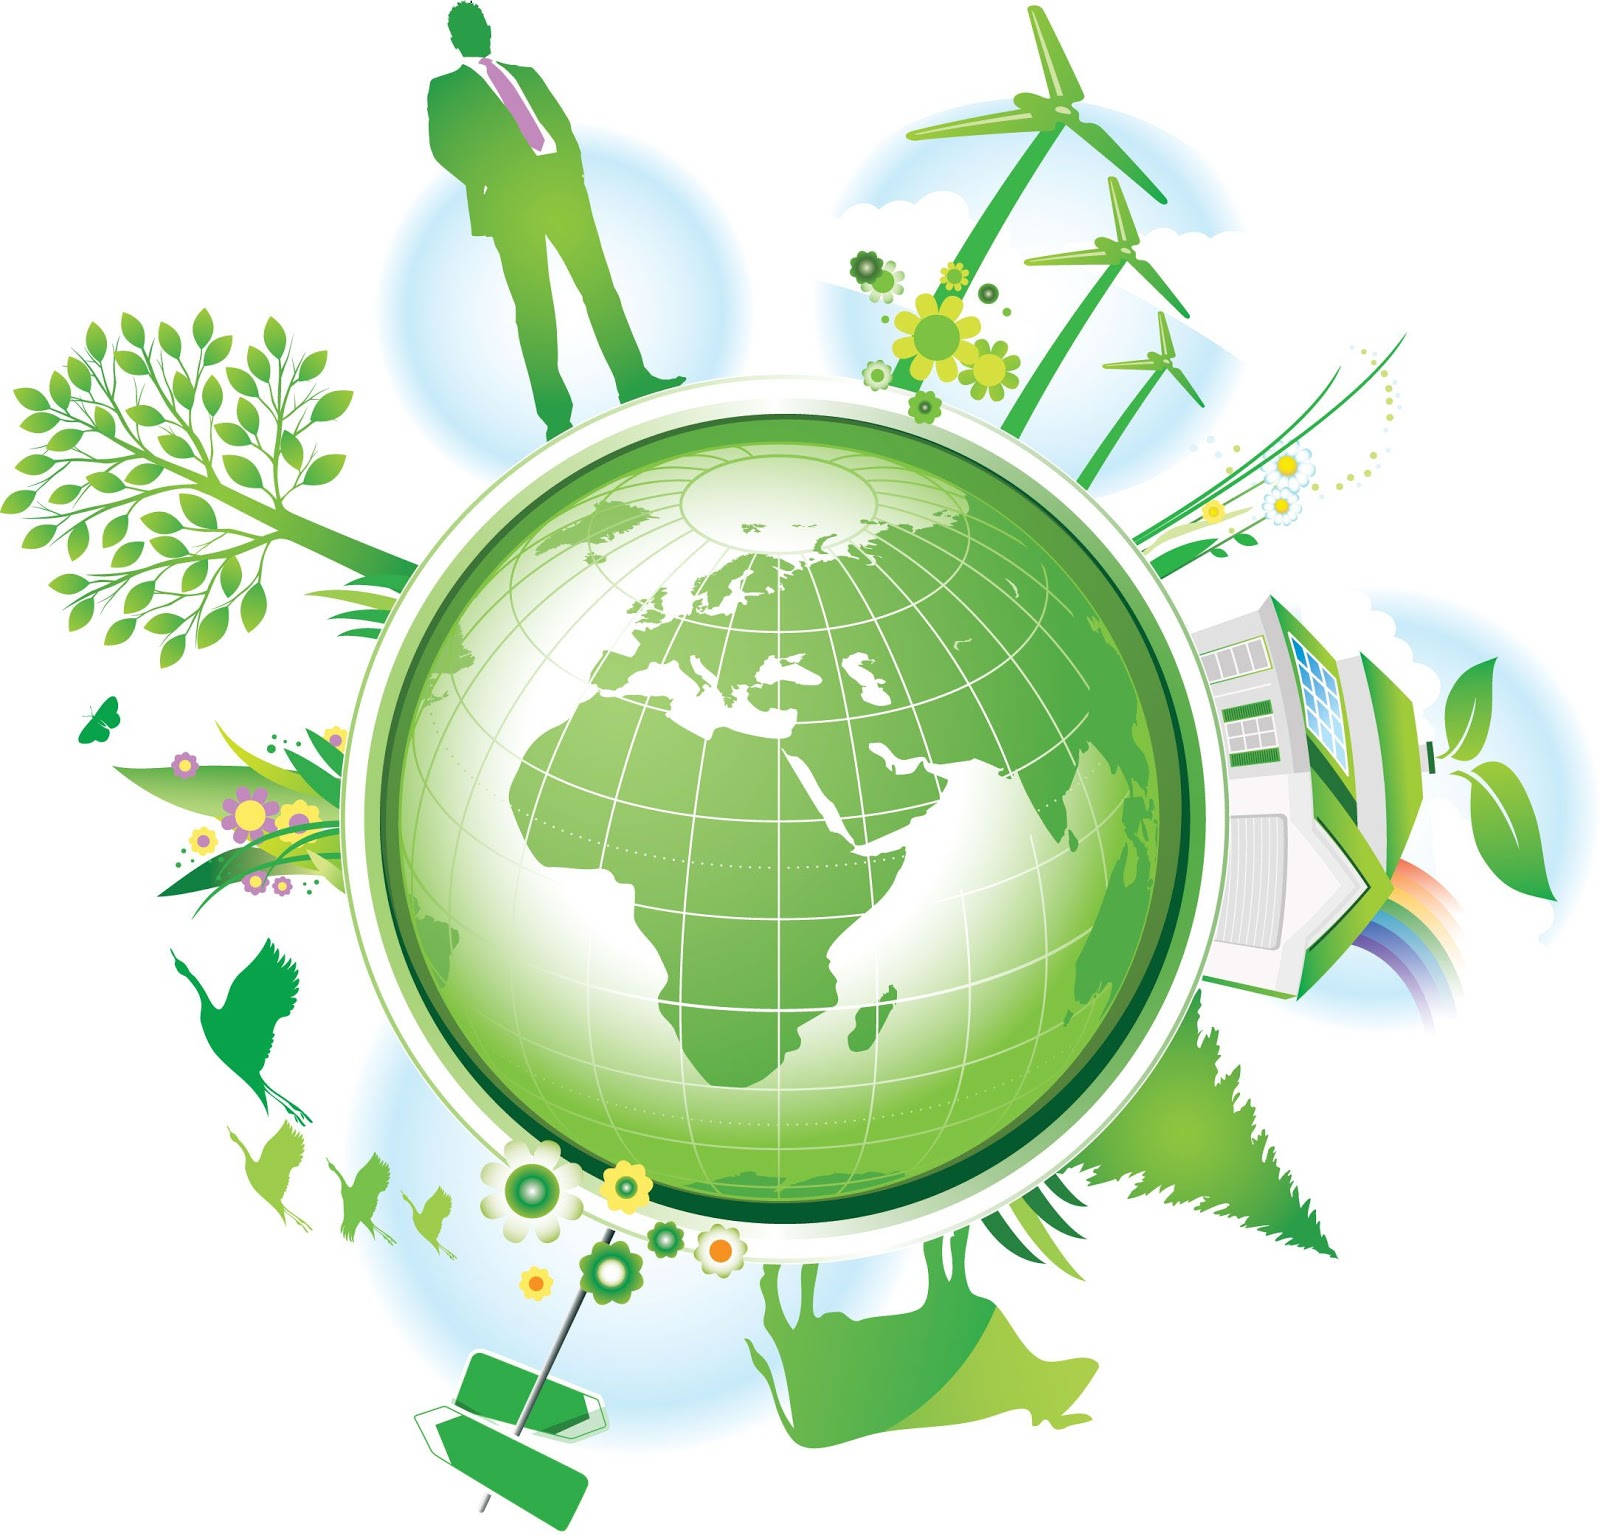 green energy, renewable energy, the green earth